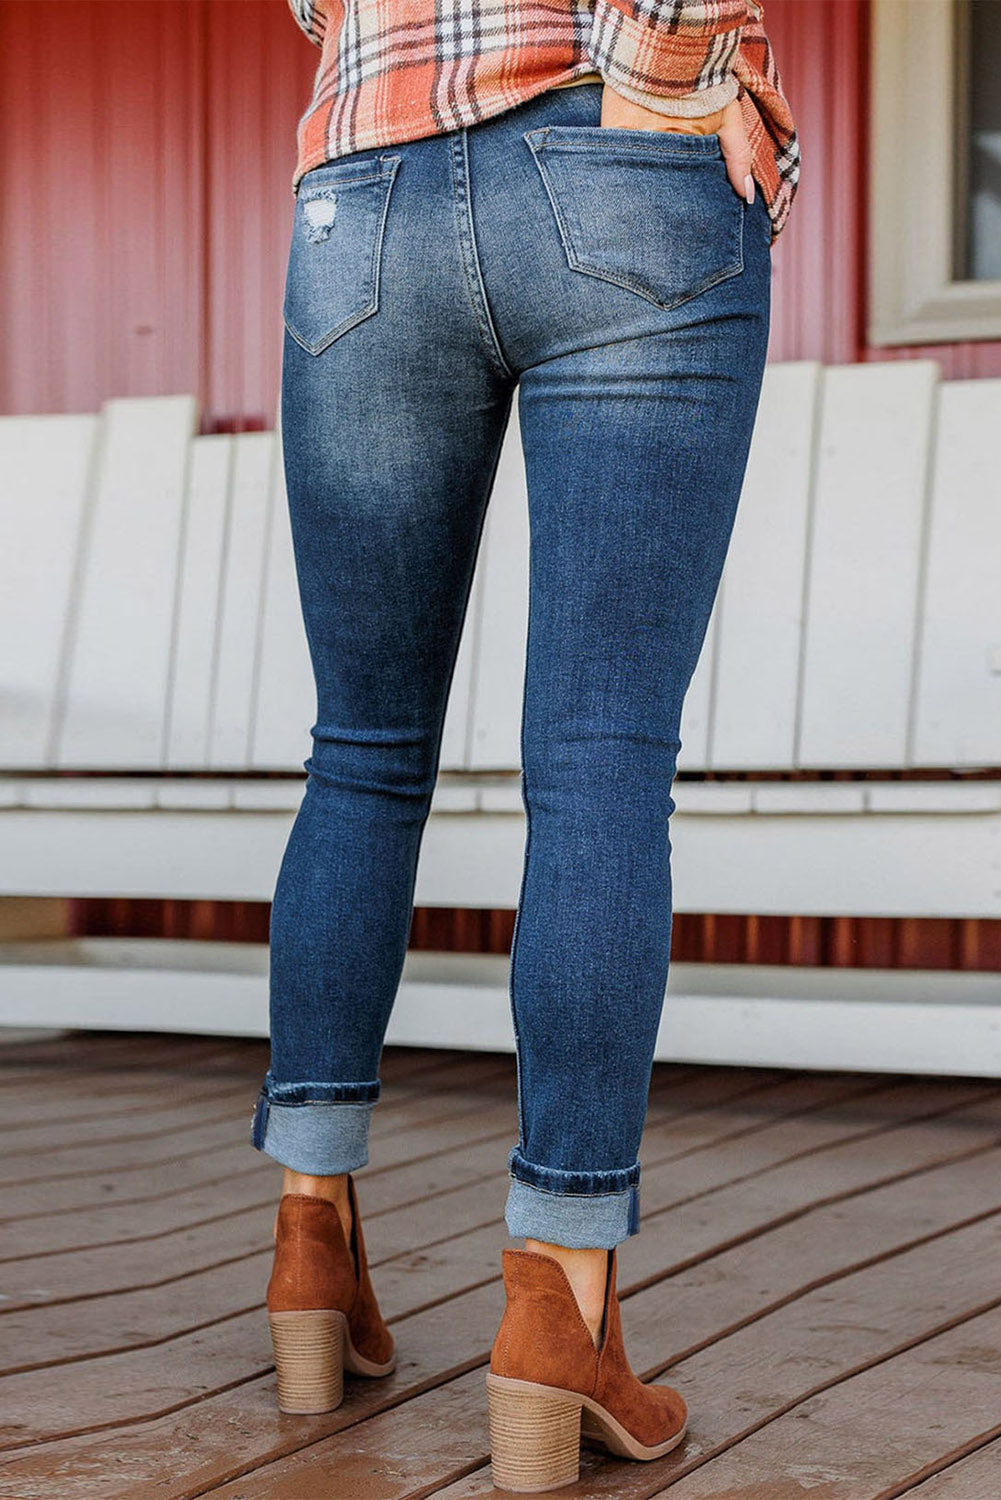 Blaue Skinny-Jeans mit Knopfleiste und hoher Taille im Distressed-Look